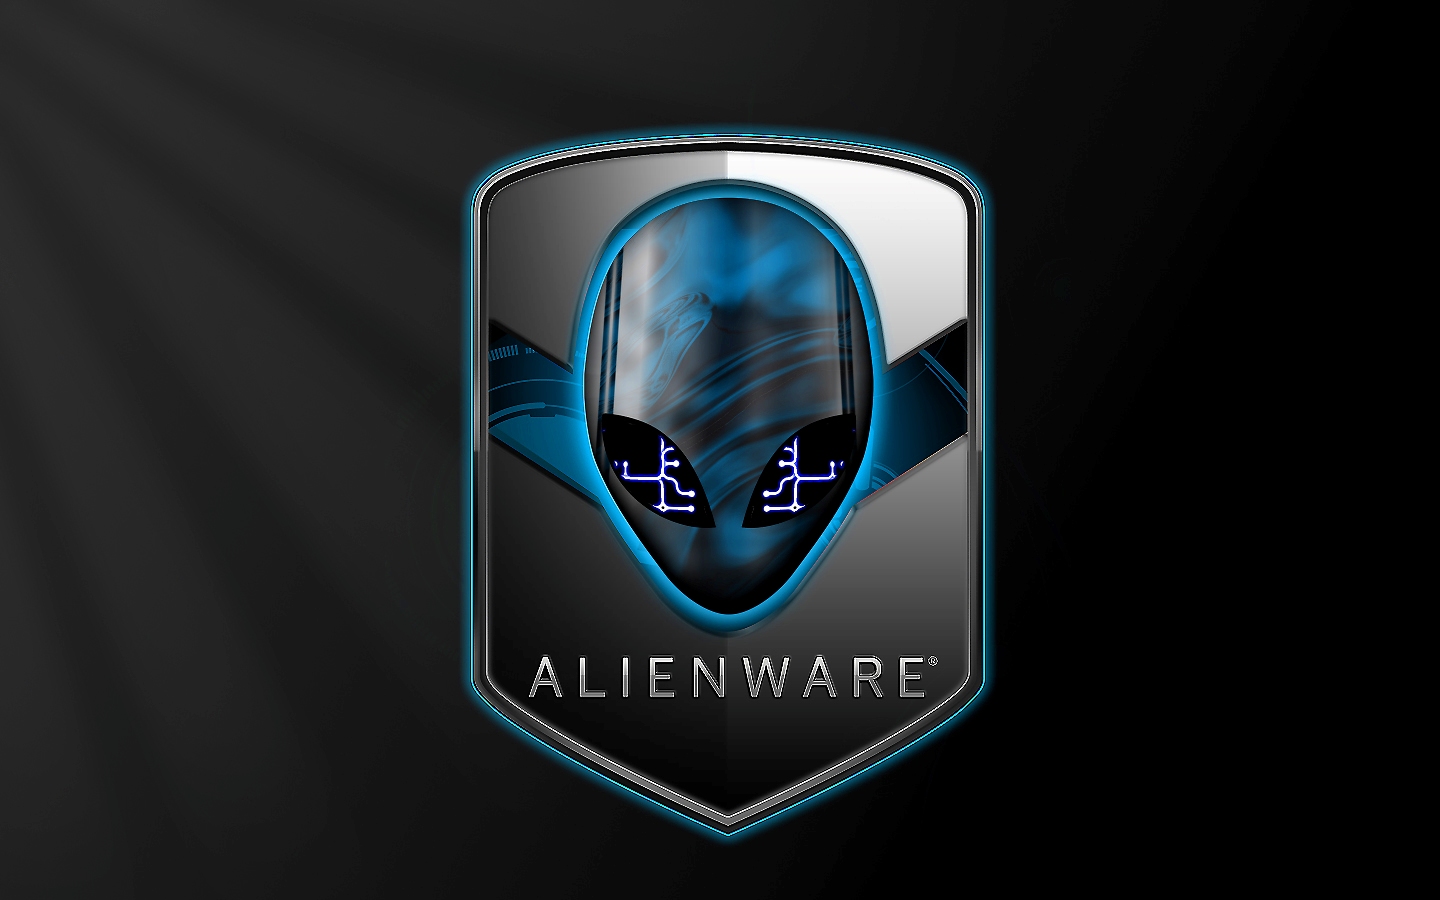 window 7 alienware blue 32 bit